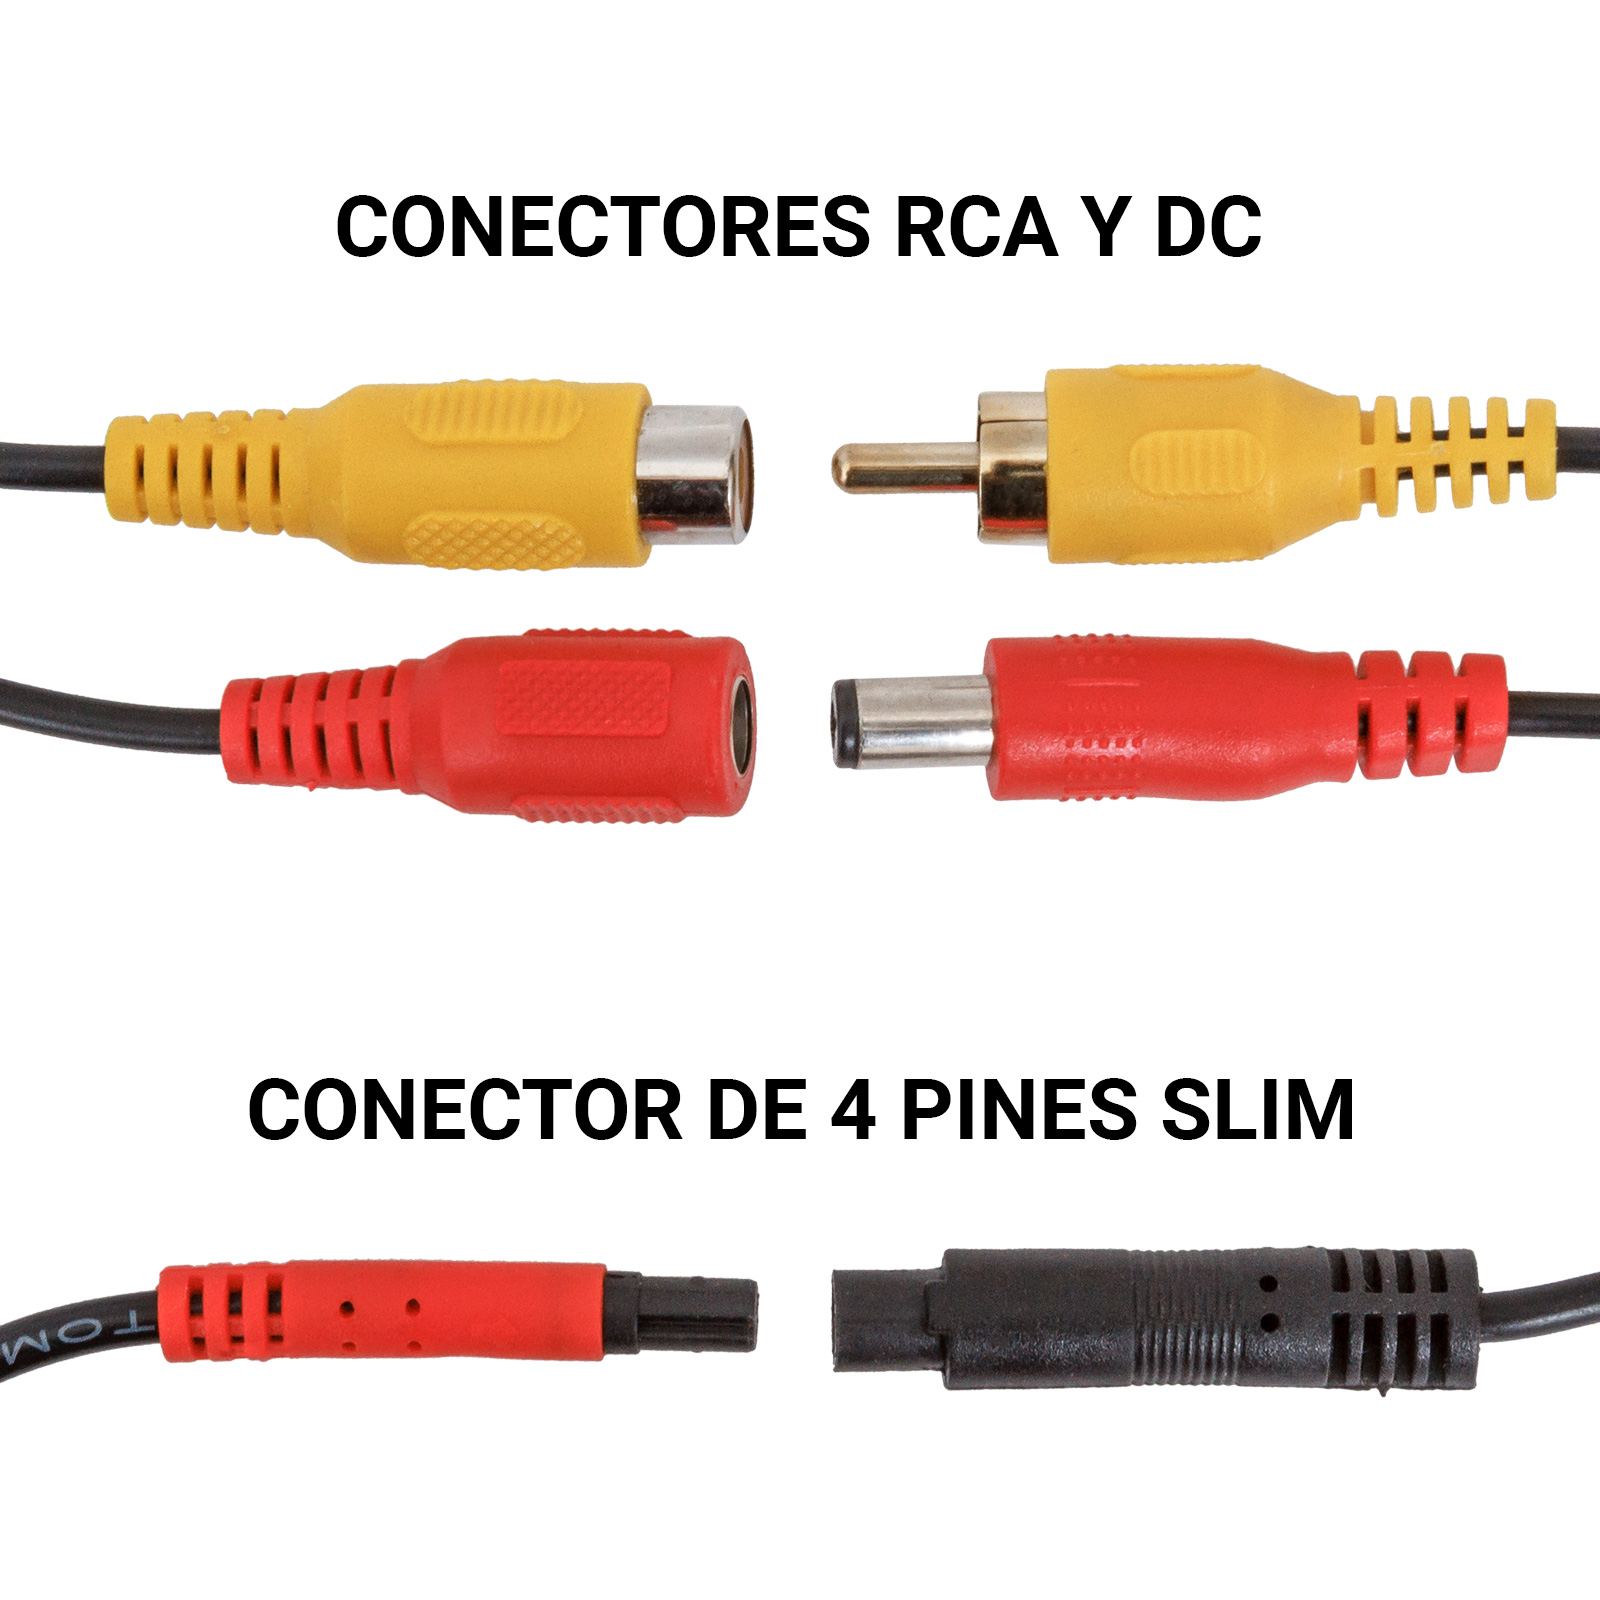 Comparación de conectores